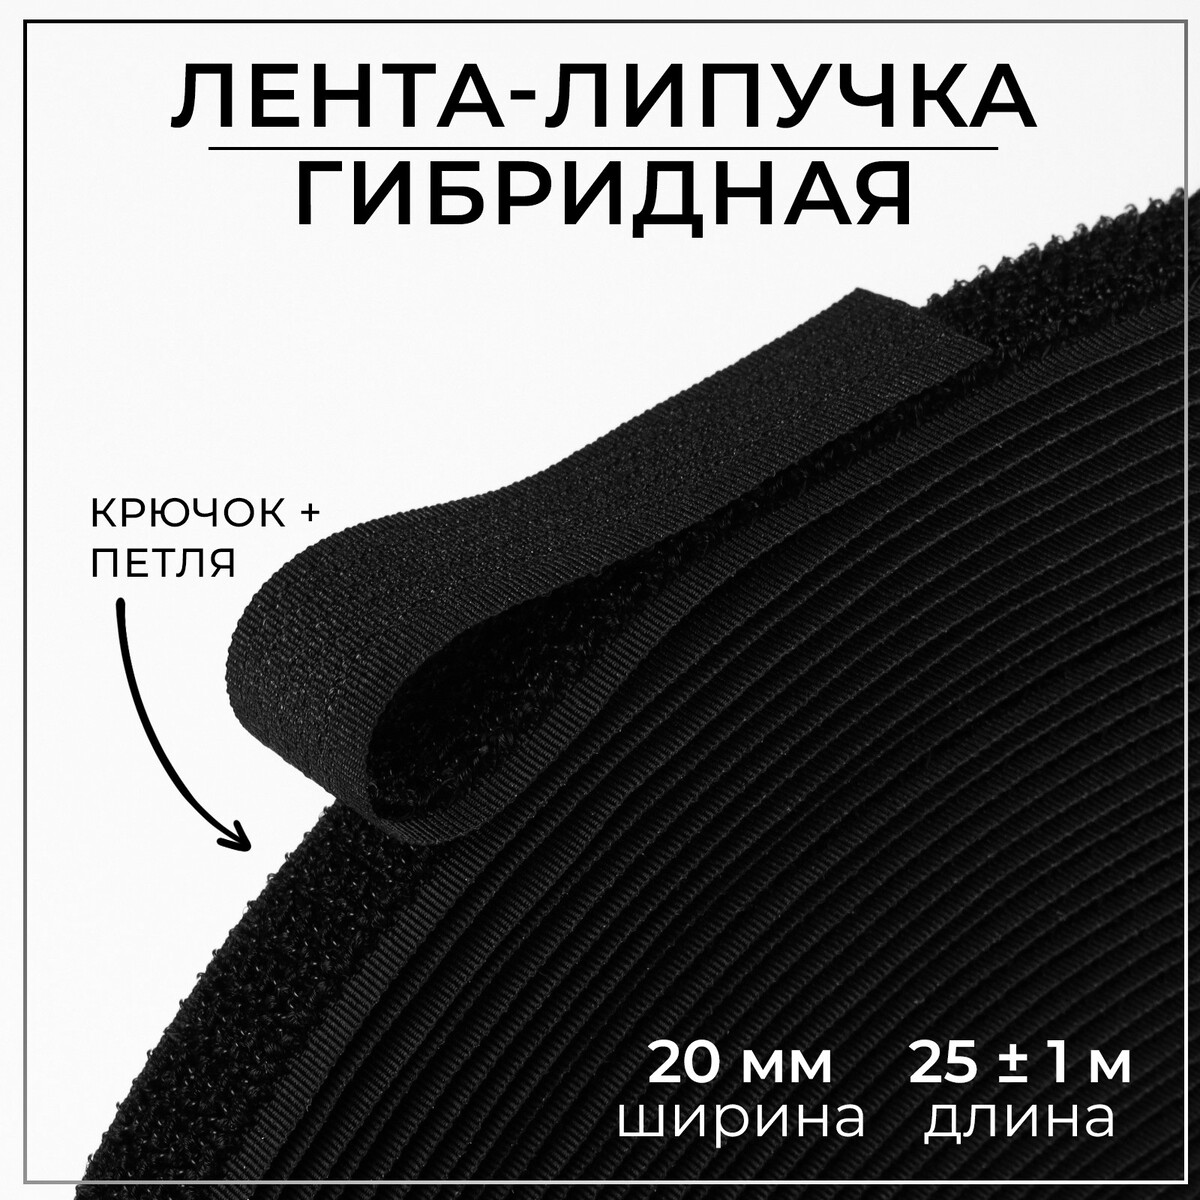 Липучка гибридная, 20 мм × 25 ± 1 м, цвет черный